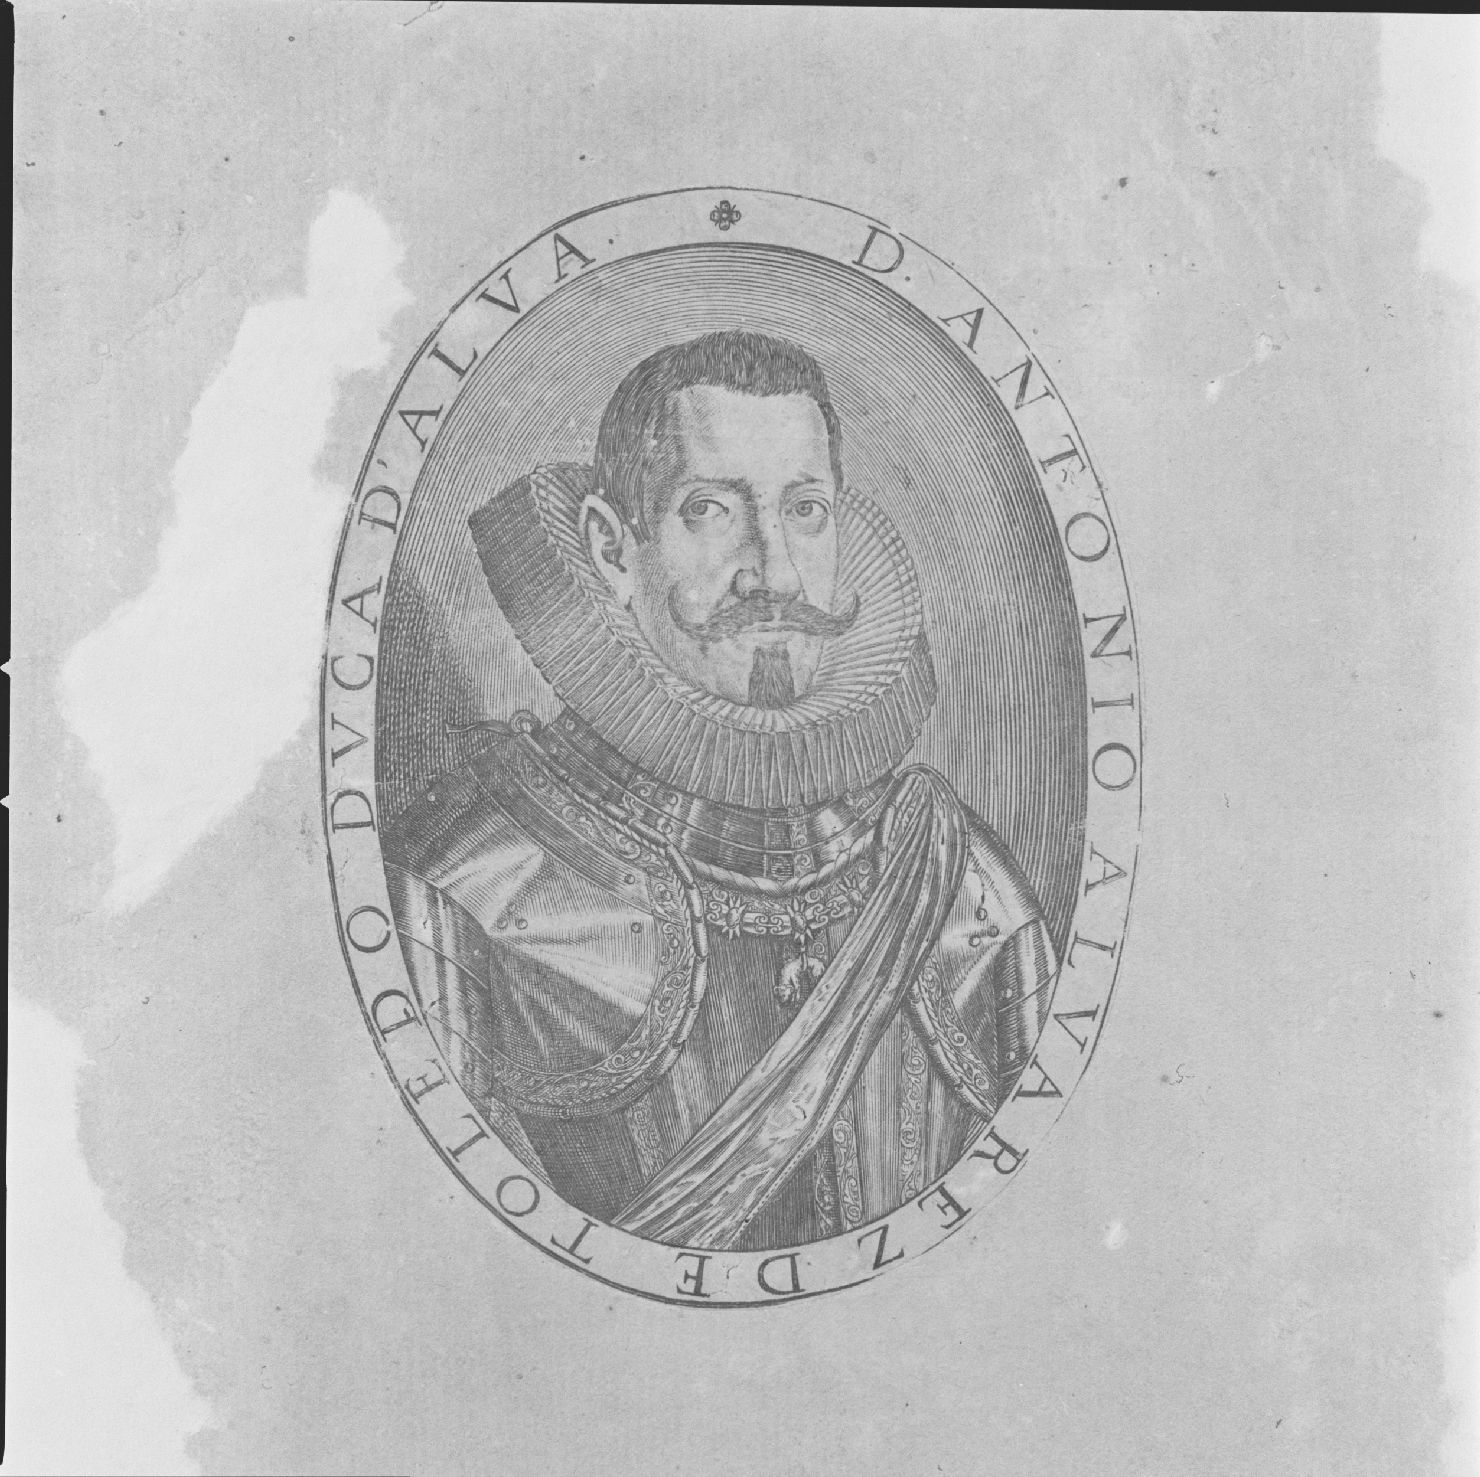 ritratto di Antonio Alvarez duca d'Alba (stampa) - ambito europeo, ambito europeo, ambito europeo (prima metà sec. XVII)